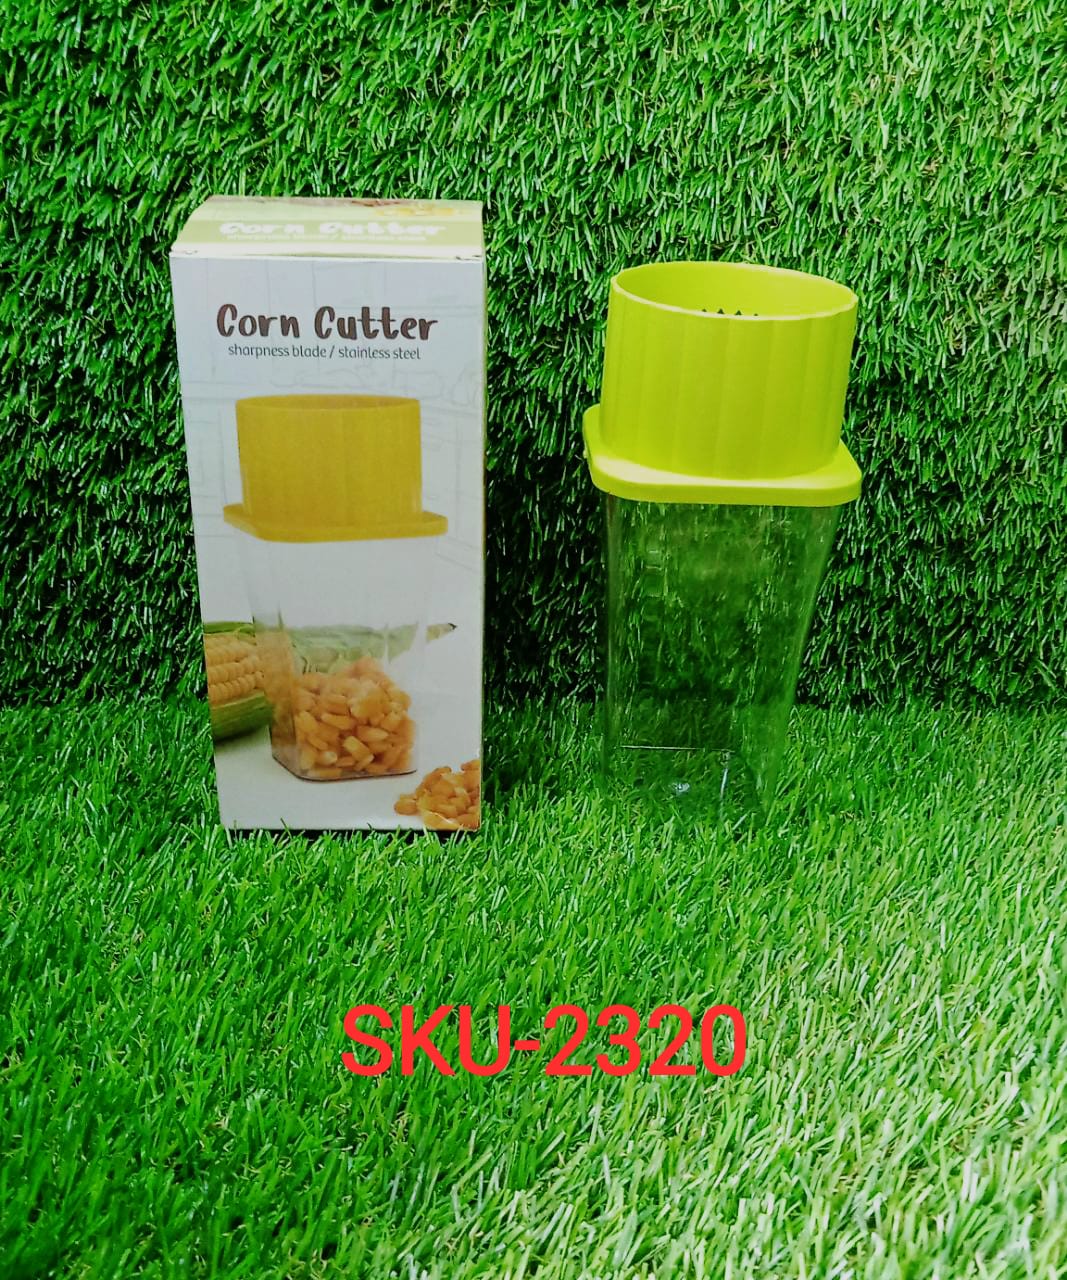 2320 Multi Use Plastic Corn Stripper Cob Remover Bowl JK Trends